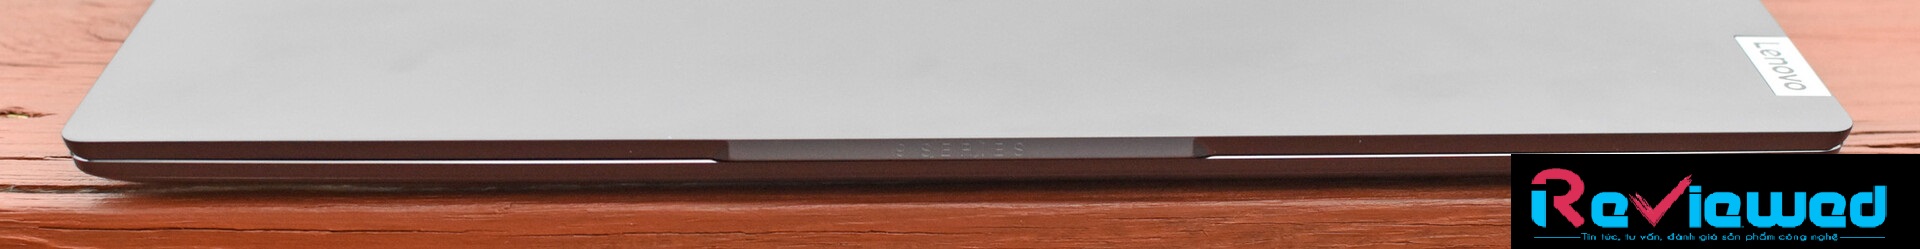 Đánh giá laptop Lenovo IdeaPad S940: Mỏng hơn, nhẹ hơn, đẹp hơn !, chuyên trang tư vấn laptop